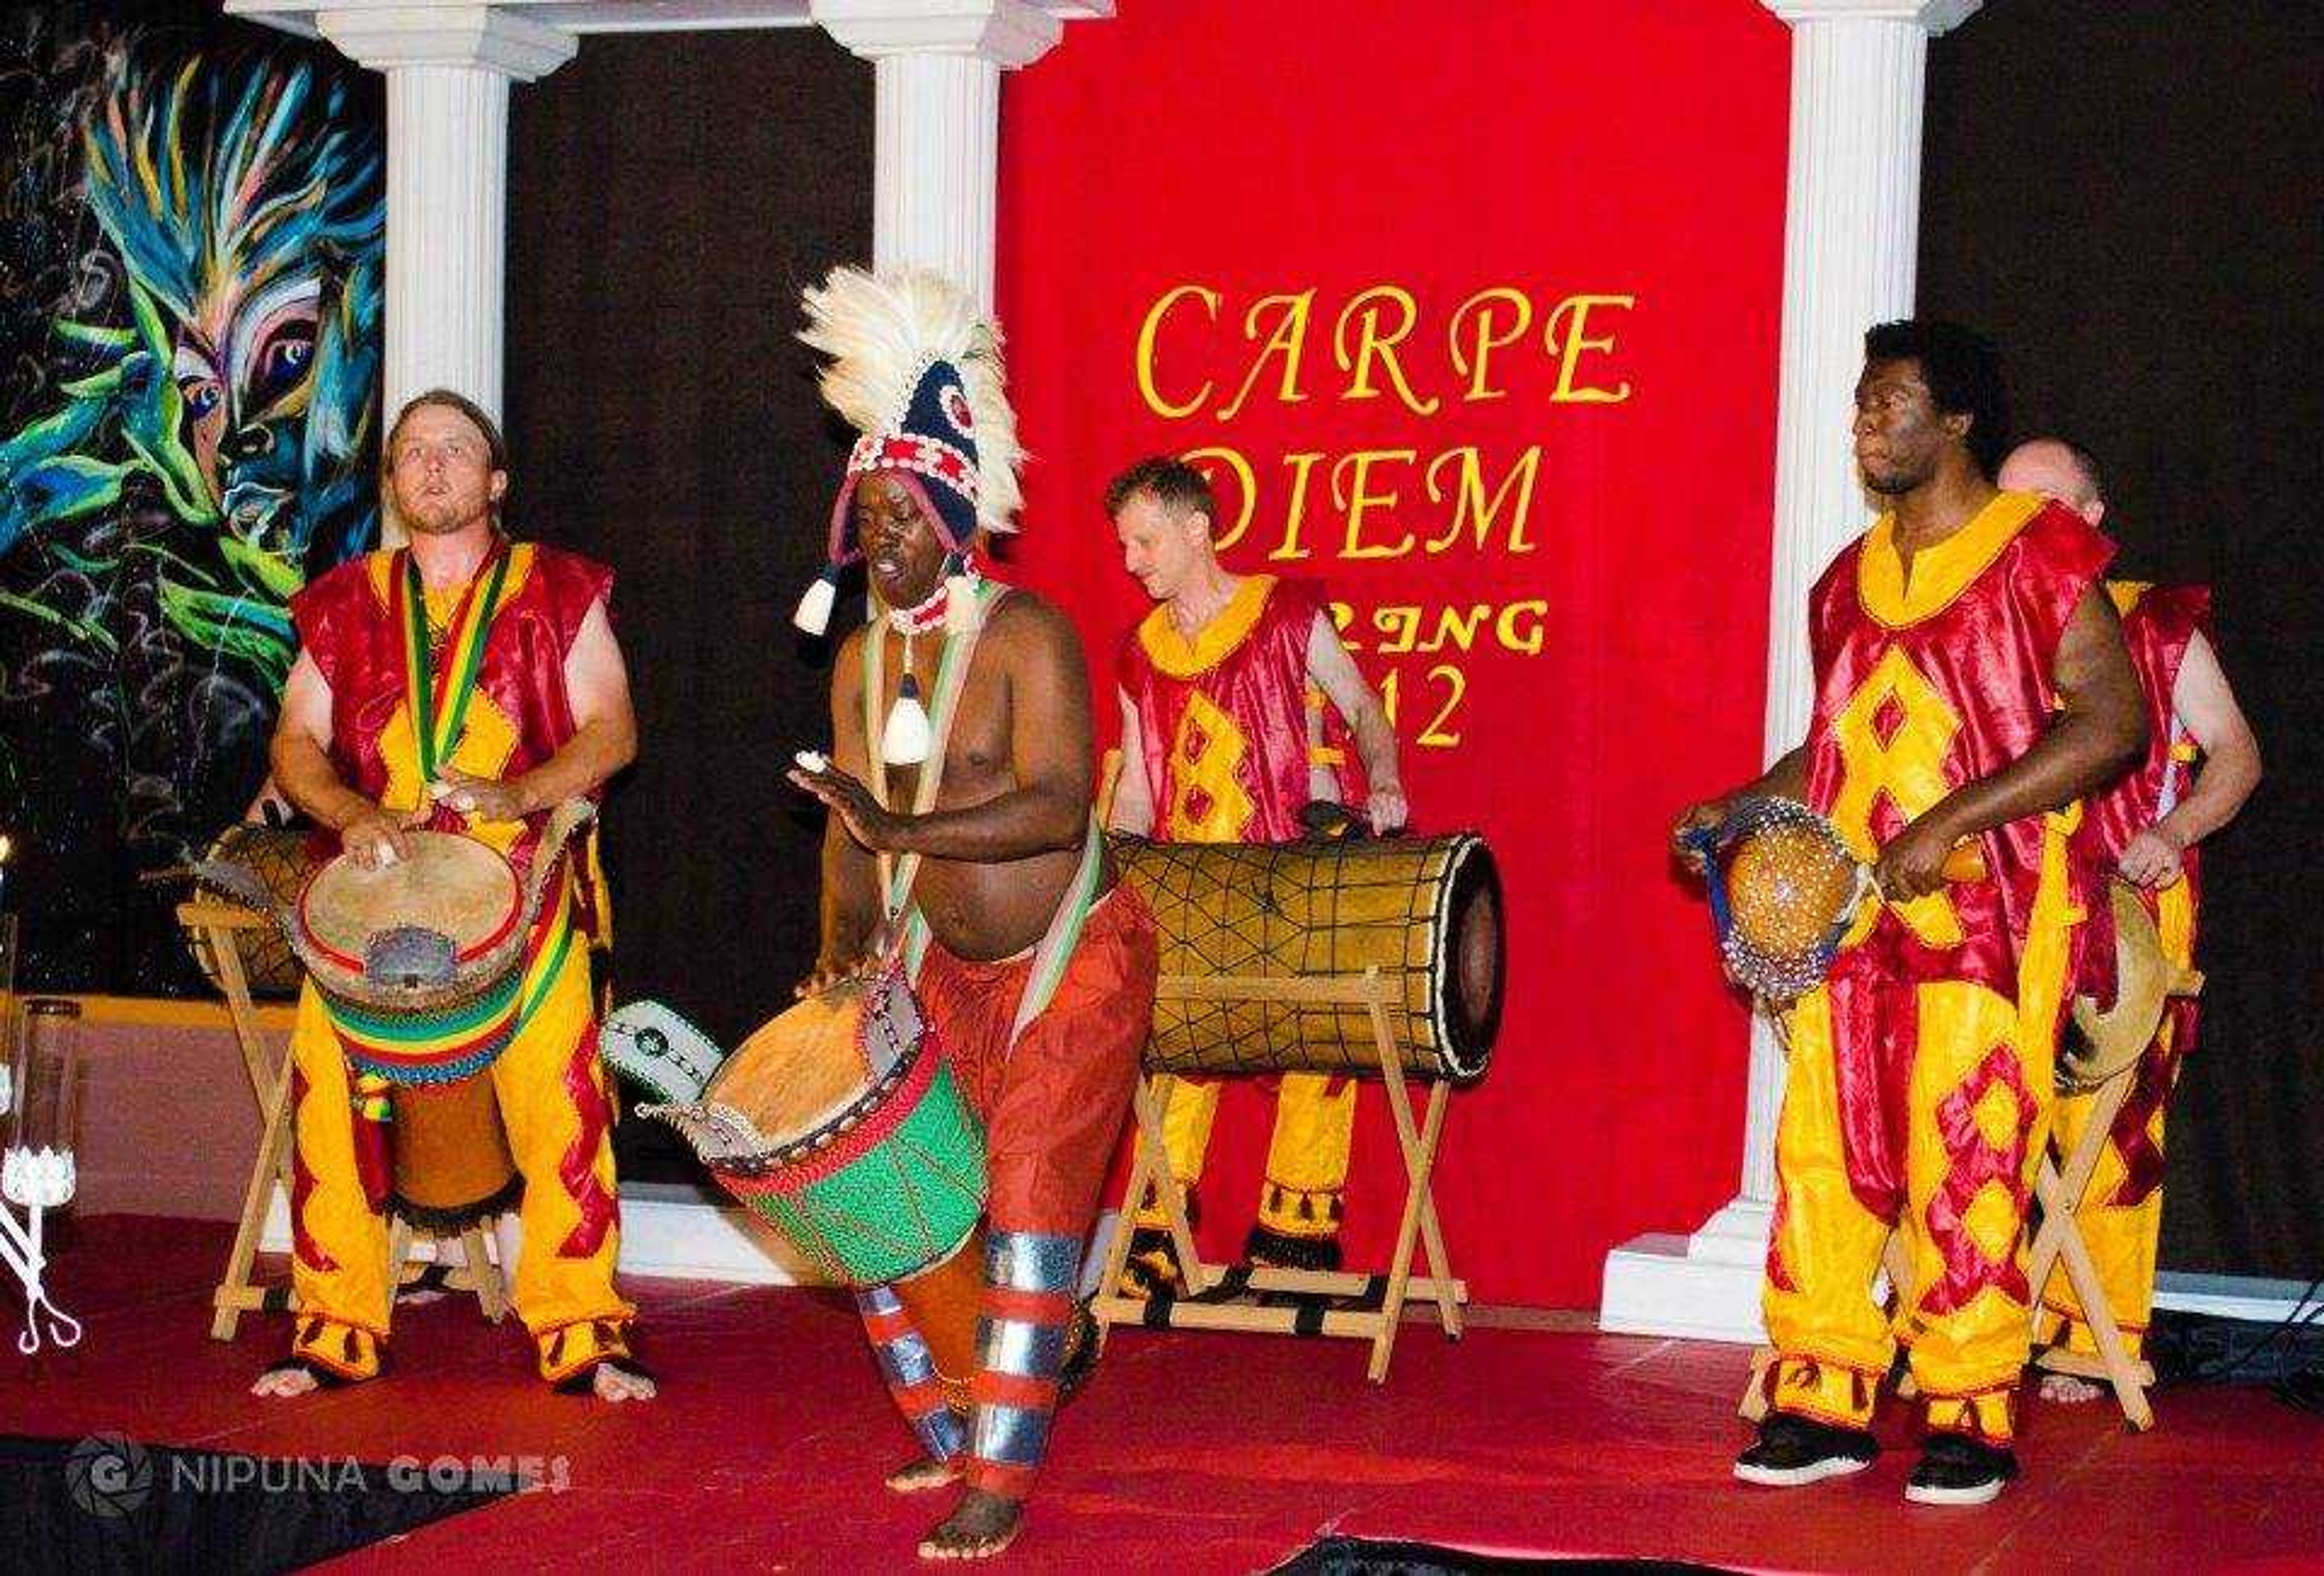 Carpe Diem event will celebrate cultural diversity on campus